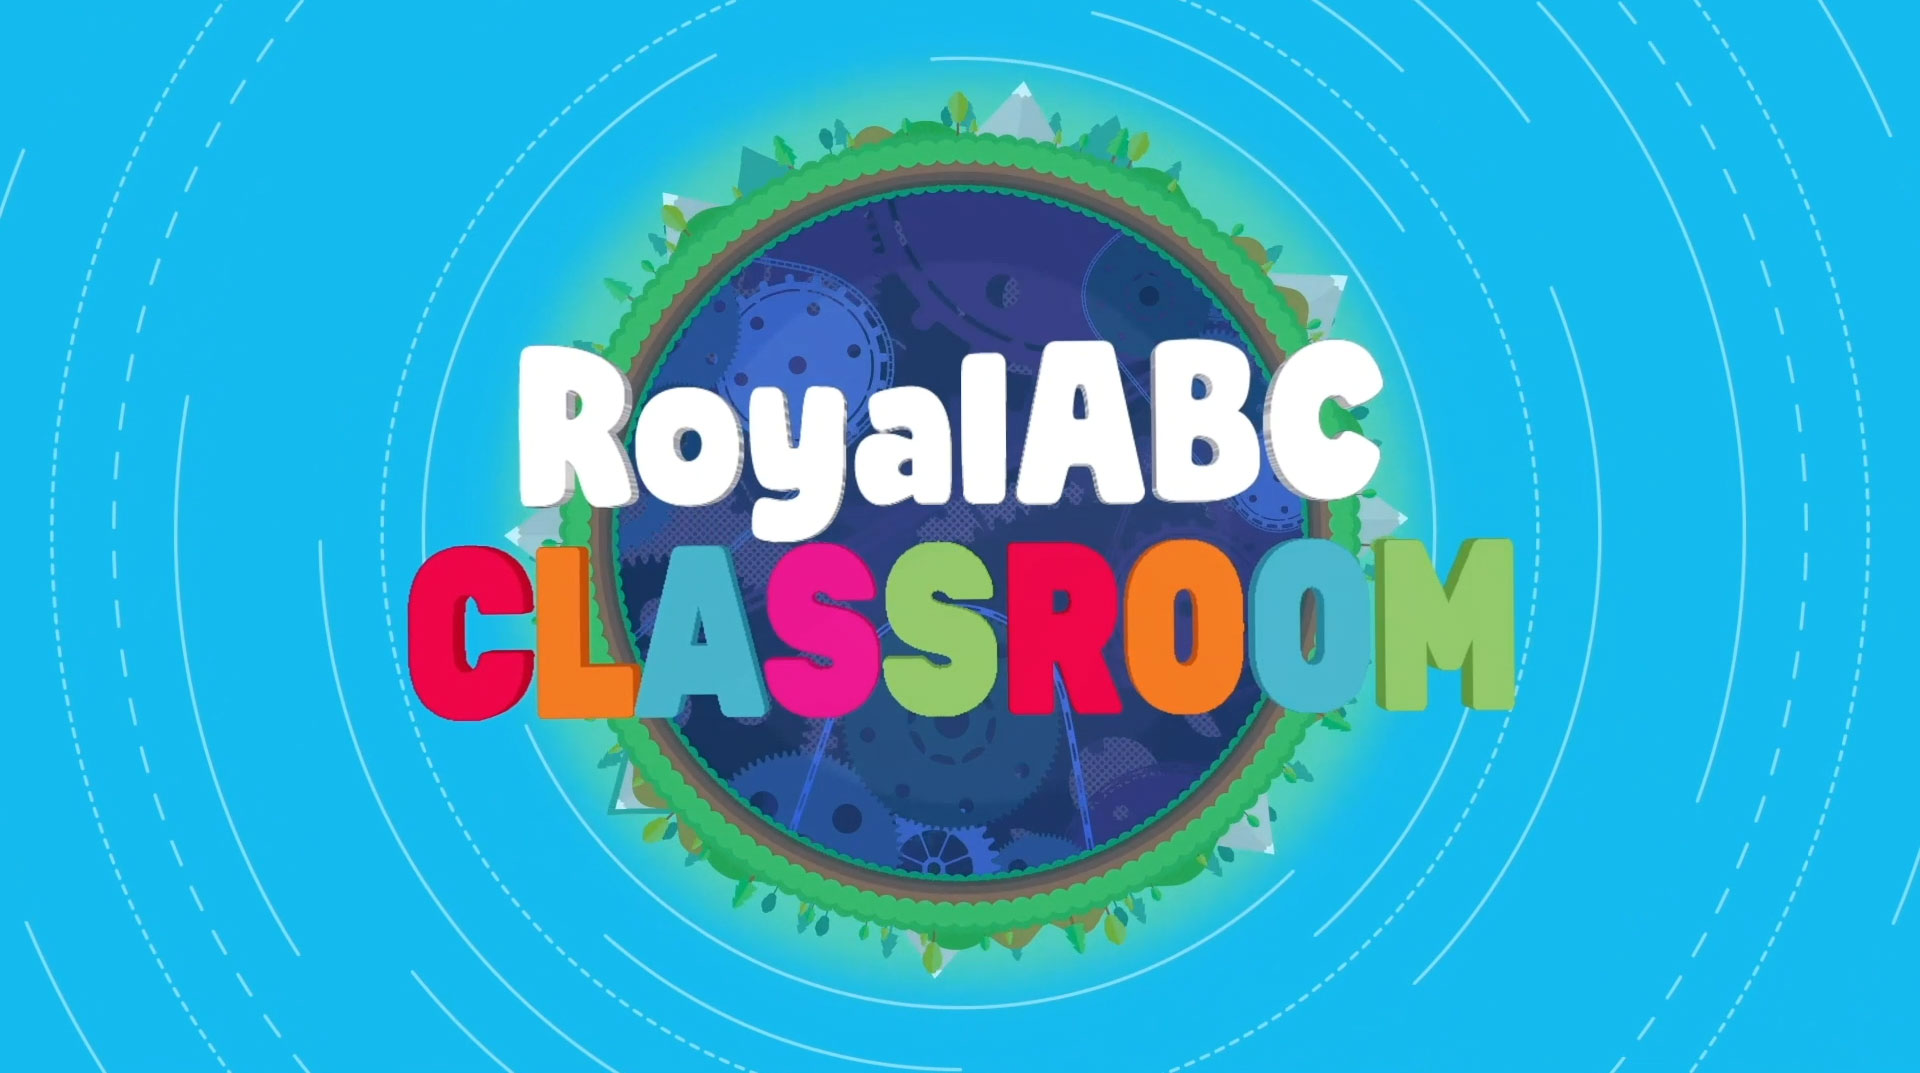 Lớp học trên RoyalABC là nơi trẻ em có thể học tập và cải thiện kỹ năng tiếng Anh một cách gamefied và đầy thú vị. Các hoạt động giúp trẻ phát triển khả năng đọc, viết và nghe hiểu tiếng Anh. Hãy tham gia lớp học trên RoyalABC để trở thành một người thông thạo tiếng Anh.